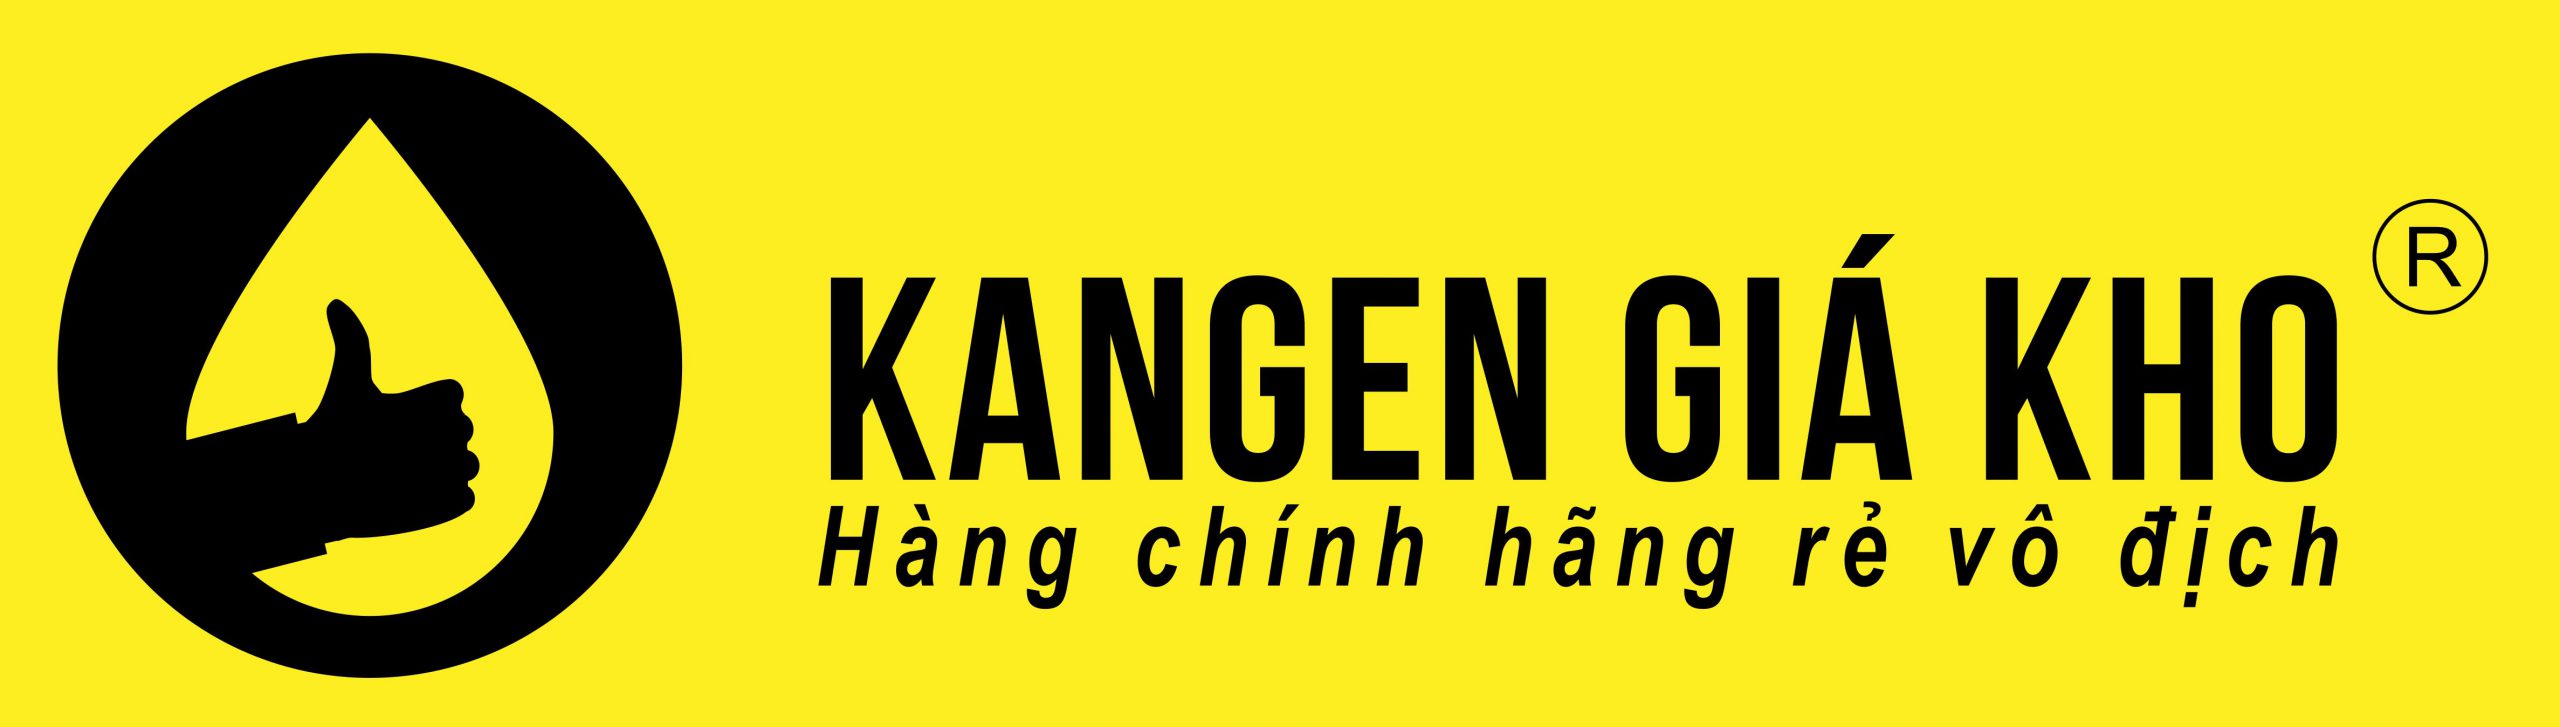 Kangen Giá Kho – Máy lọc nước kangen giá tại kho